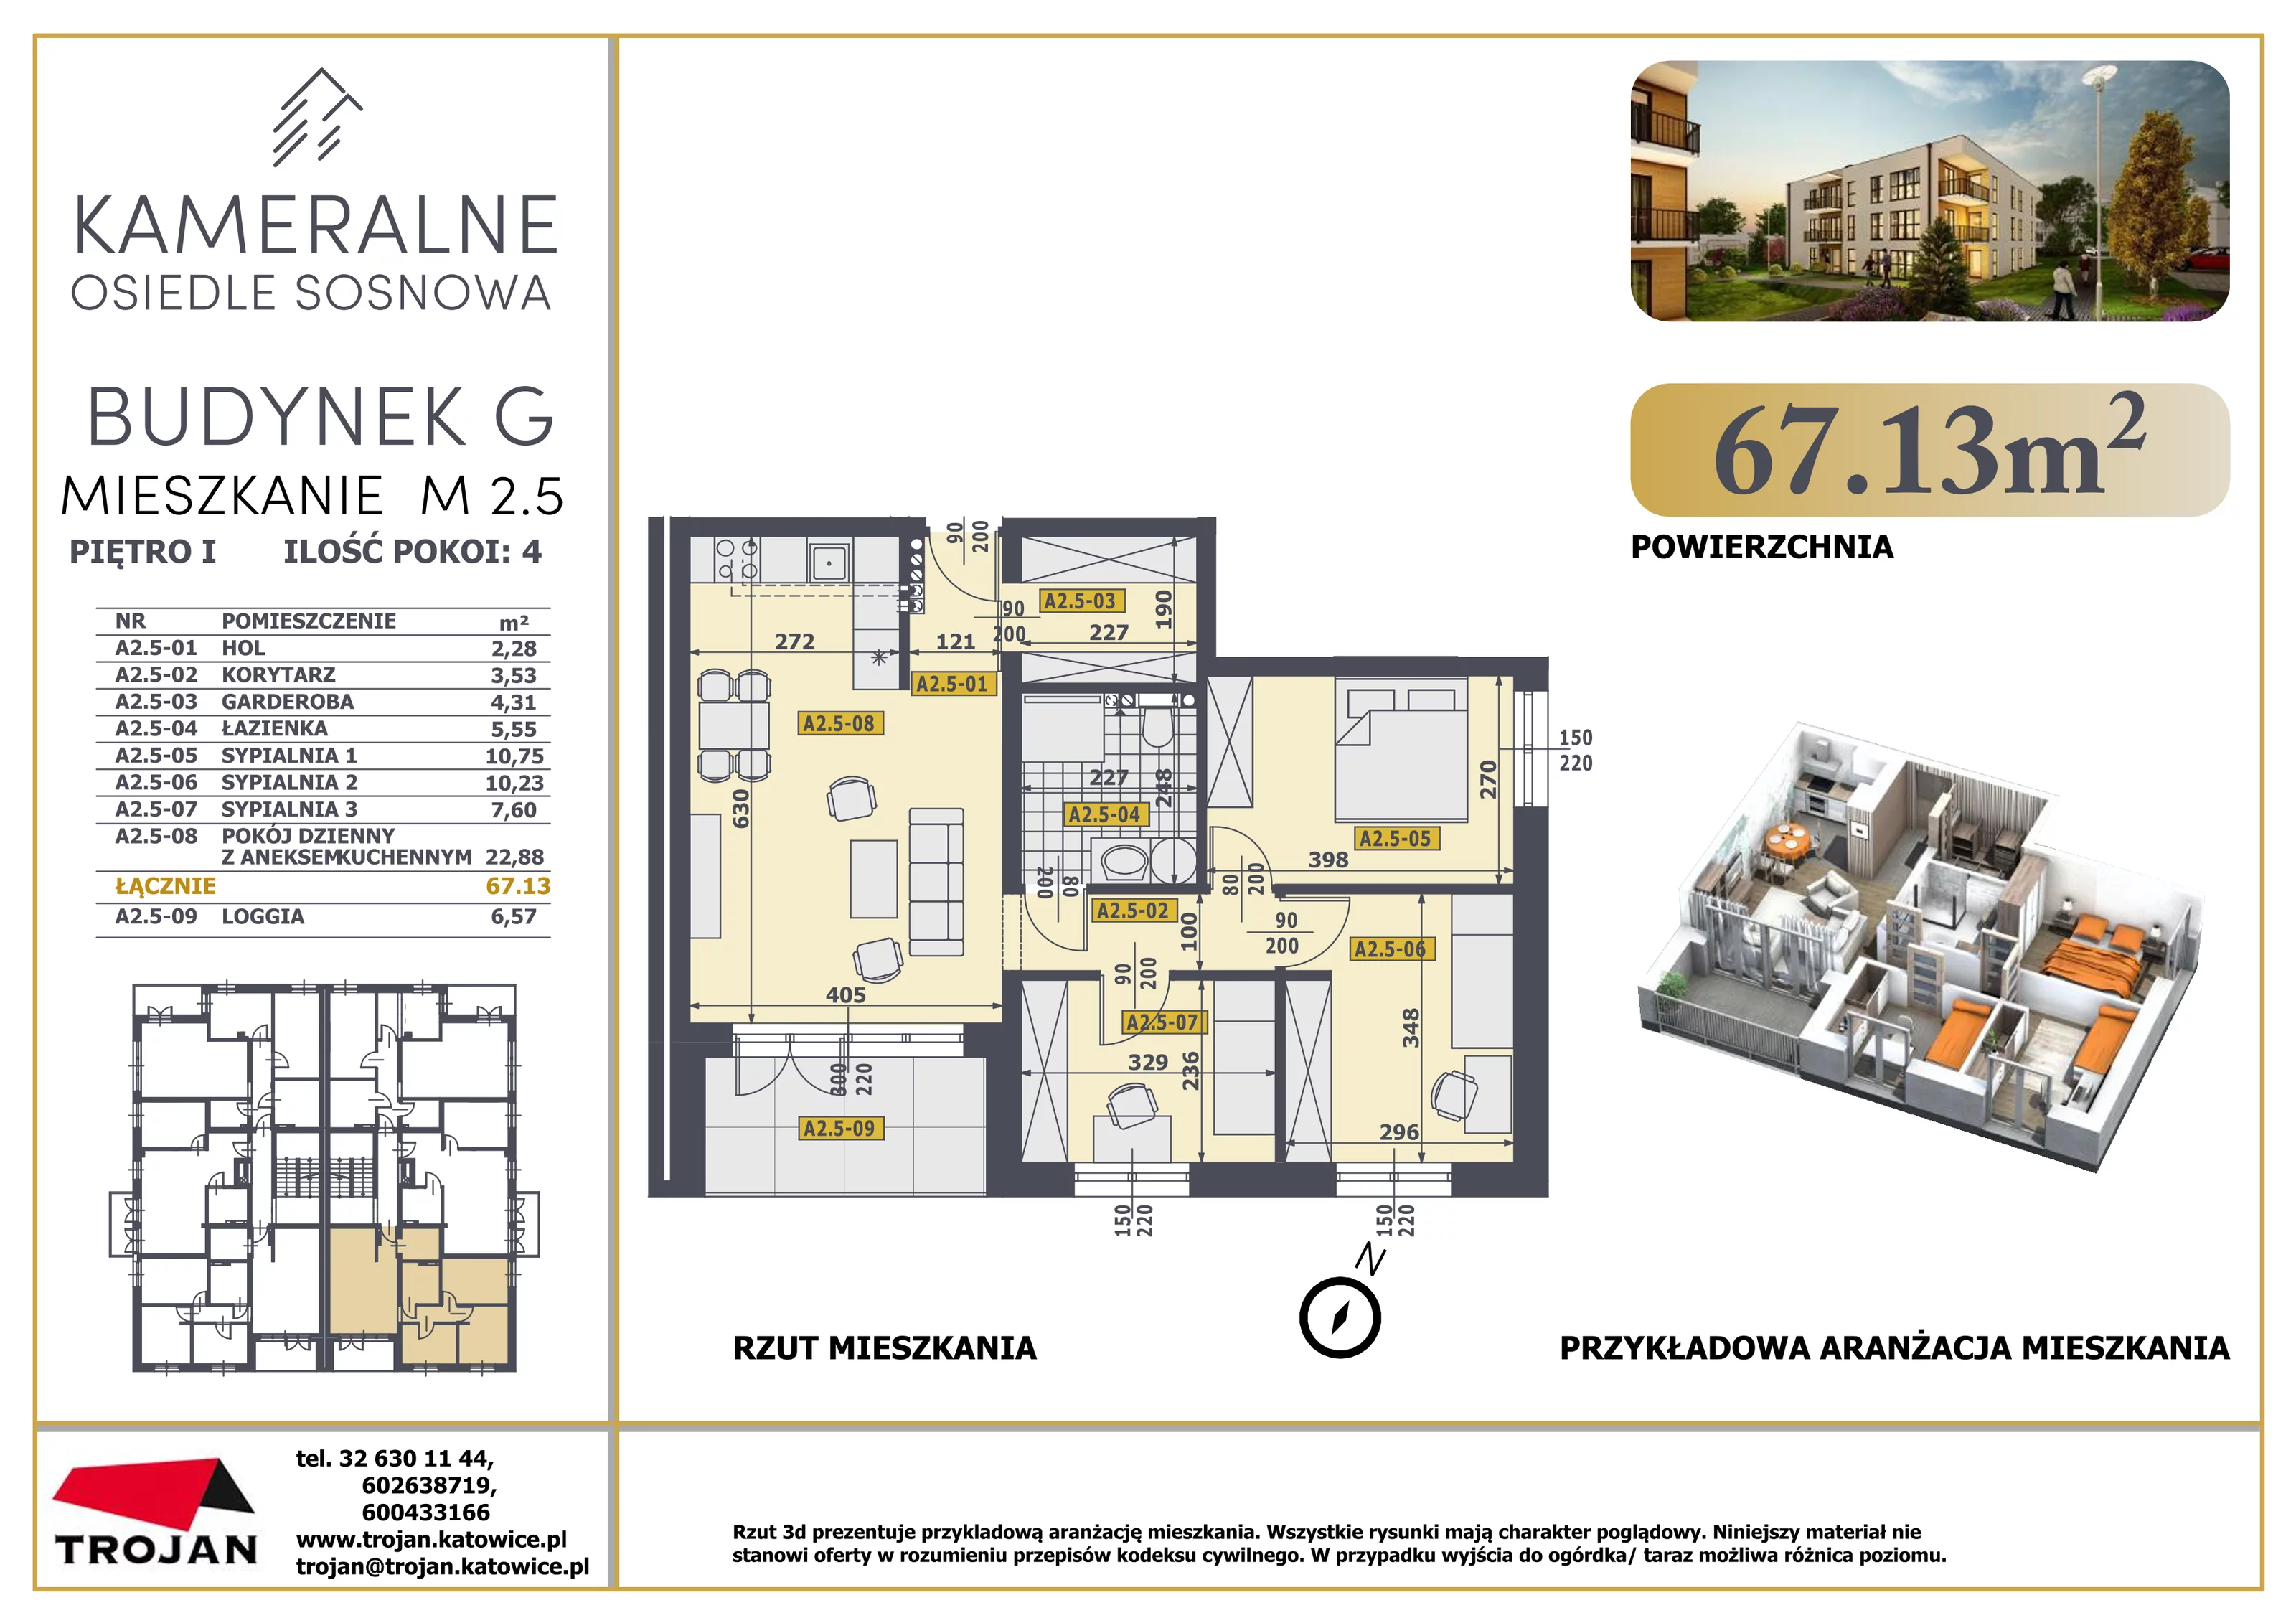 Mieszkanie 67,13 m², piętro 1, oferta nr M 2.5, Osiedle Sosnowa, Rybnik, Paruszowiec-Piaski, ul. Sosnowa 20